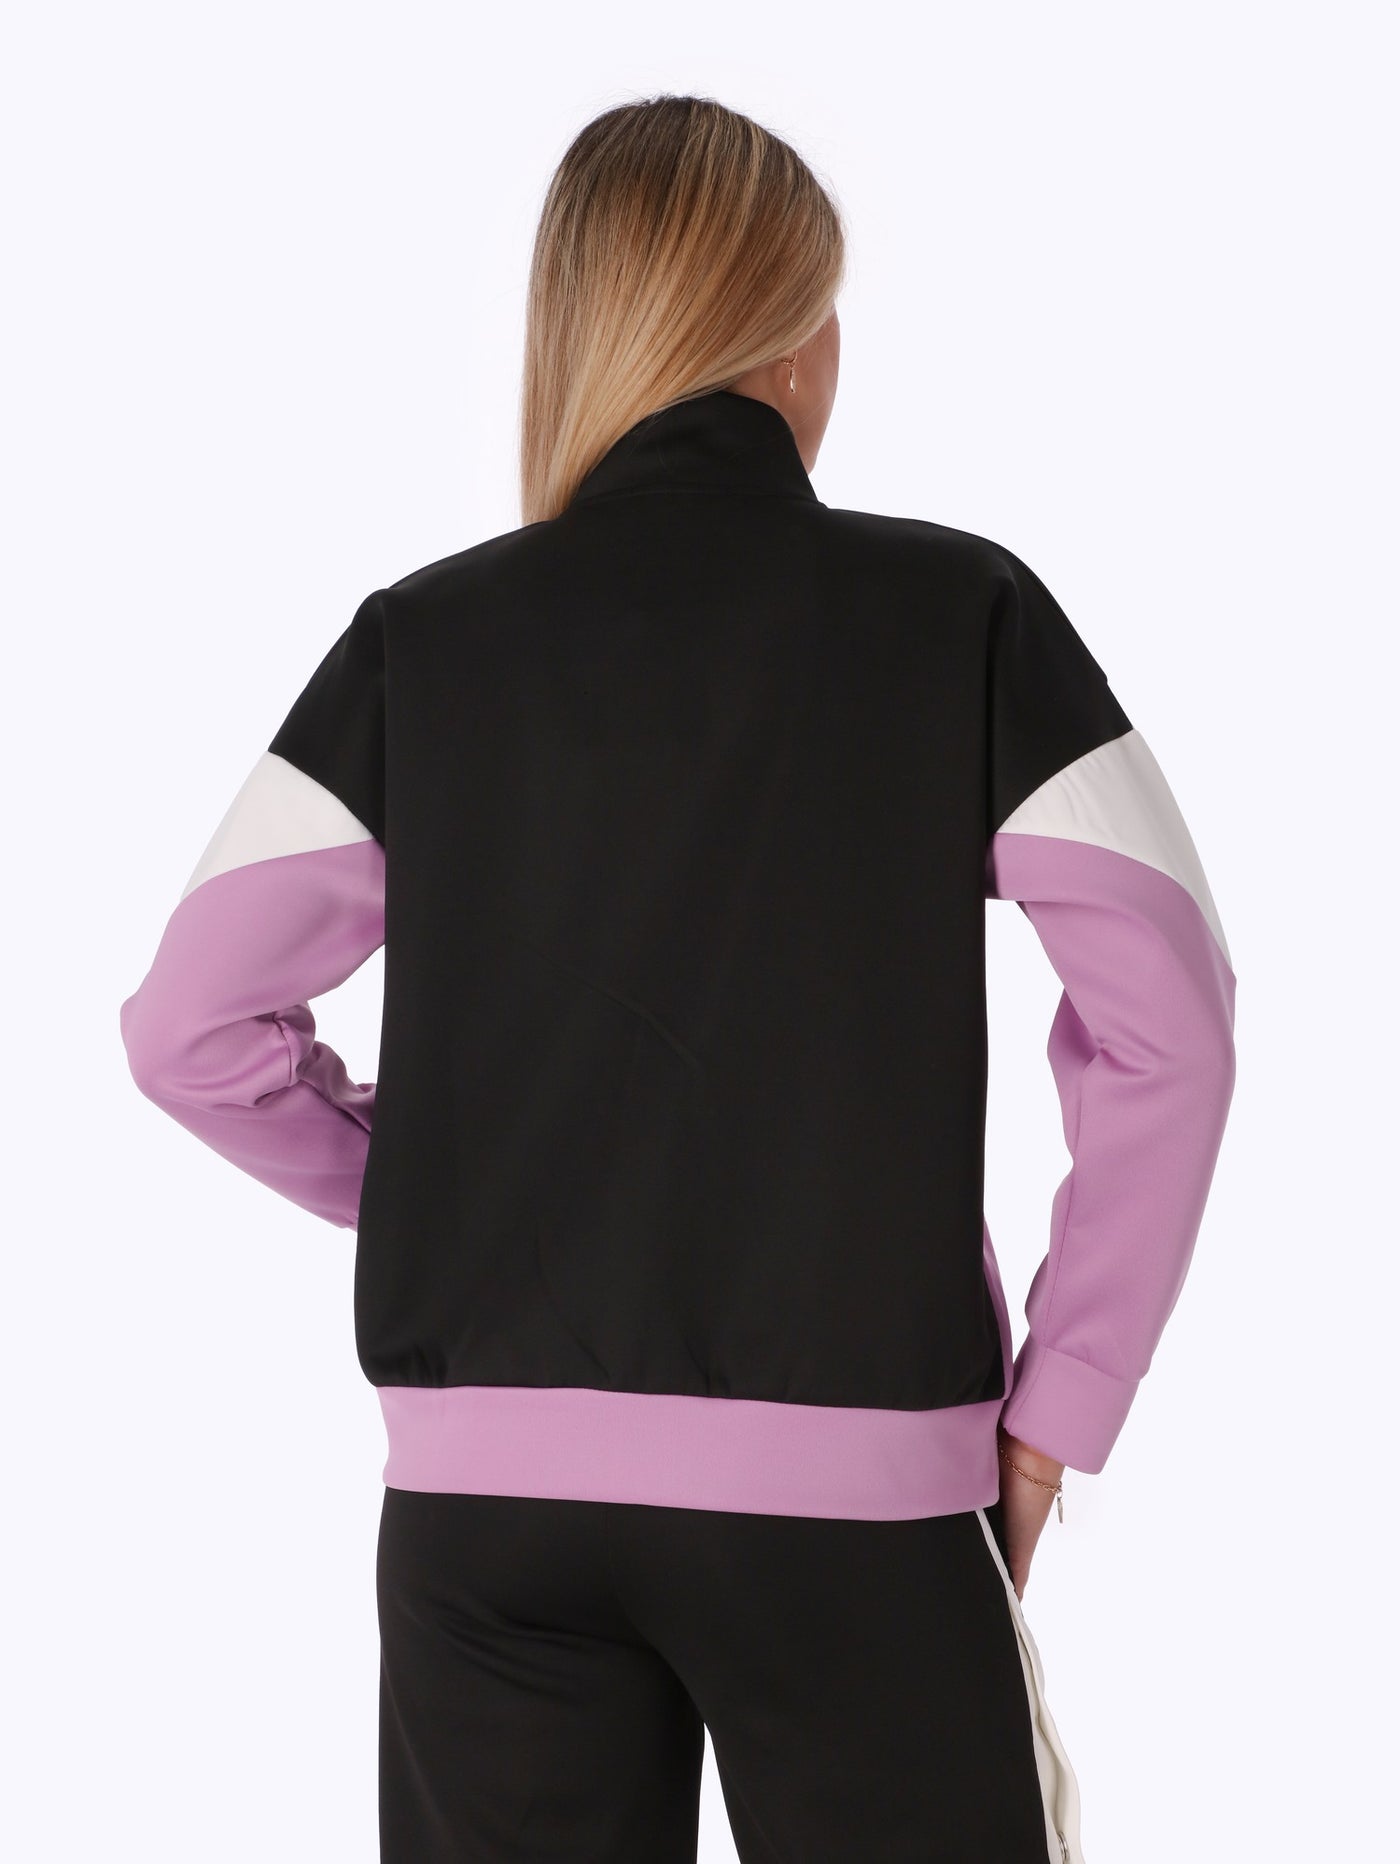 Jacket - Color Block - Front Zipper